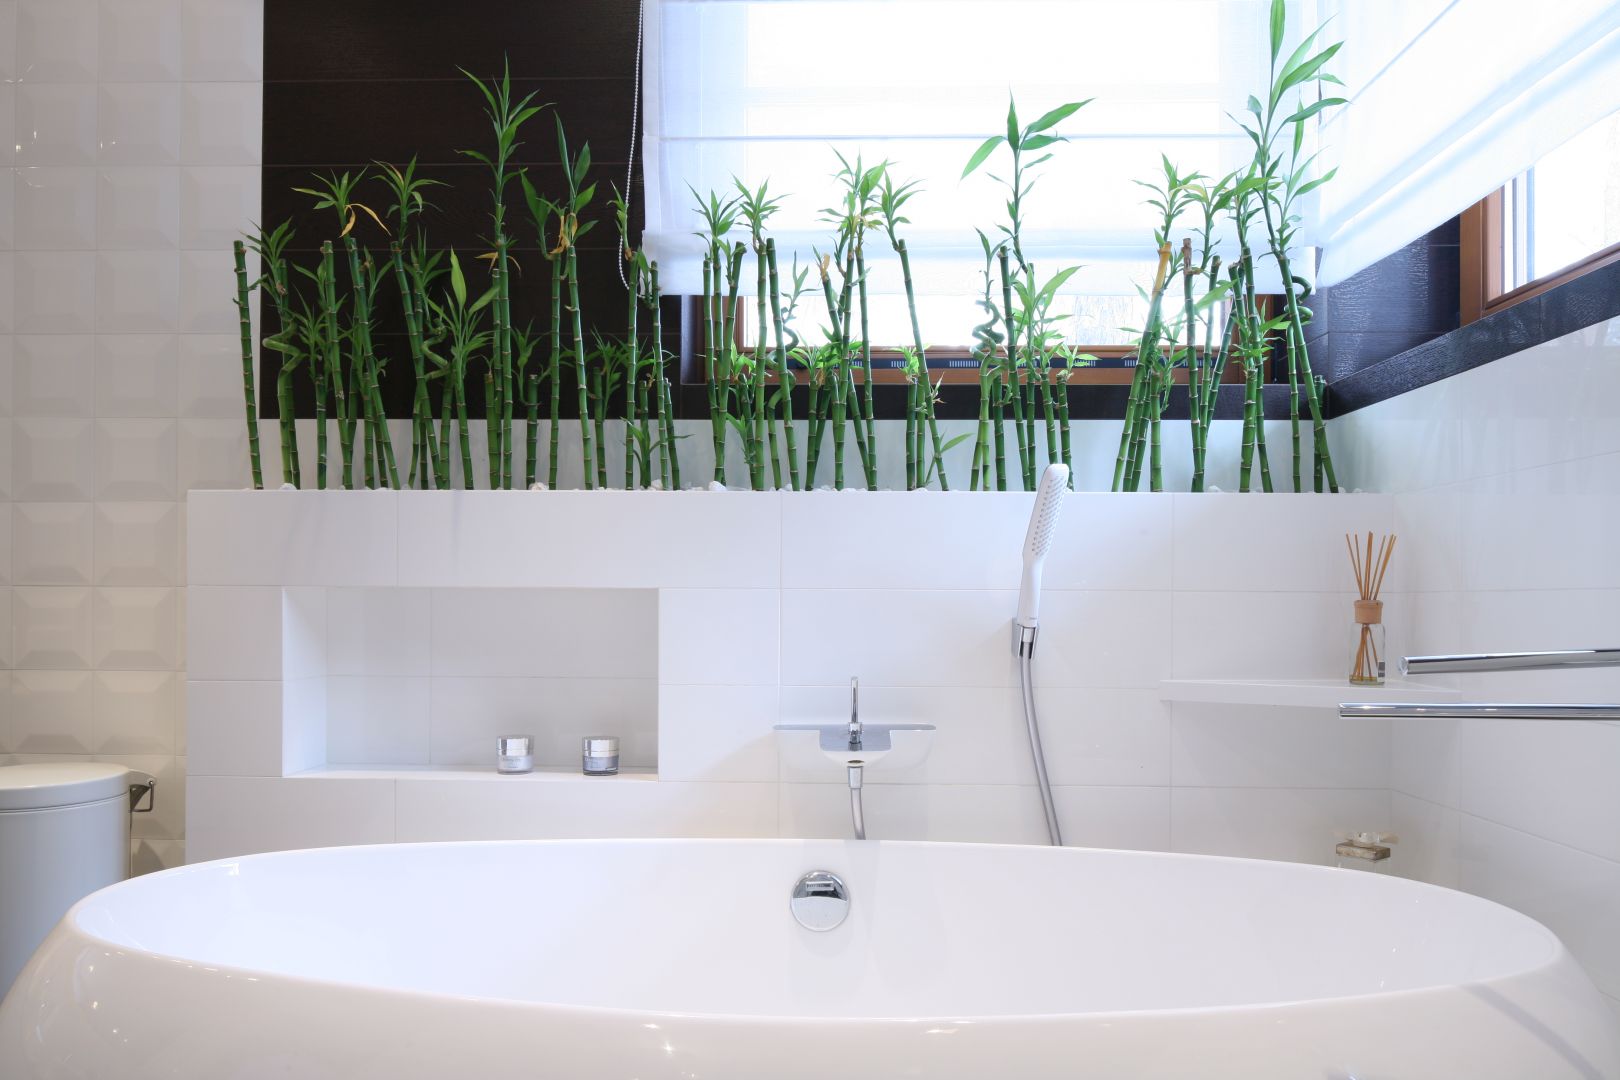 Warto w łazience zastosować motywy natury. Łodygi bambusa umieszczone nad wanną sprawią, że wnętrze stanie się bardziej naturalne. Projekt: Katarzyna Mikulska- Sękalska. Fot. Bartosz Jarosz